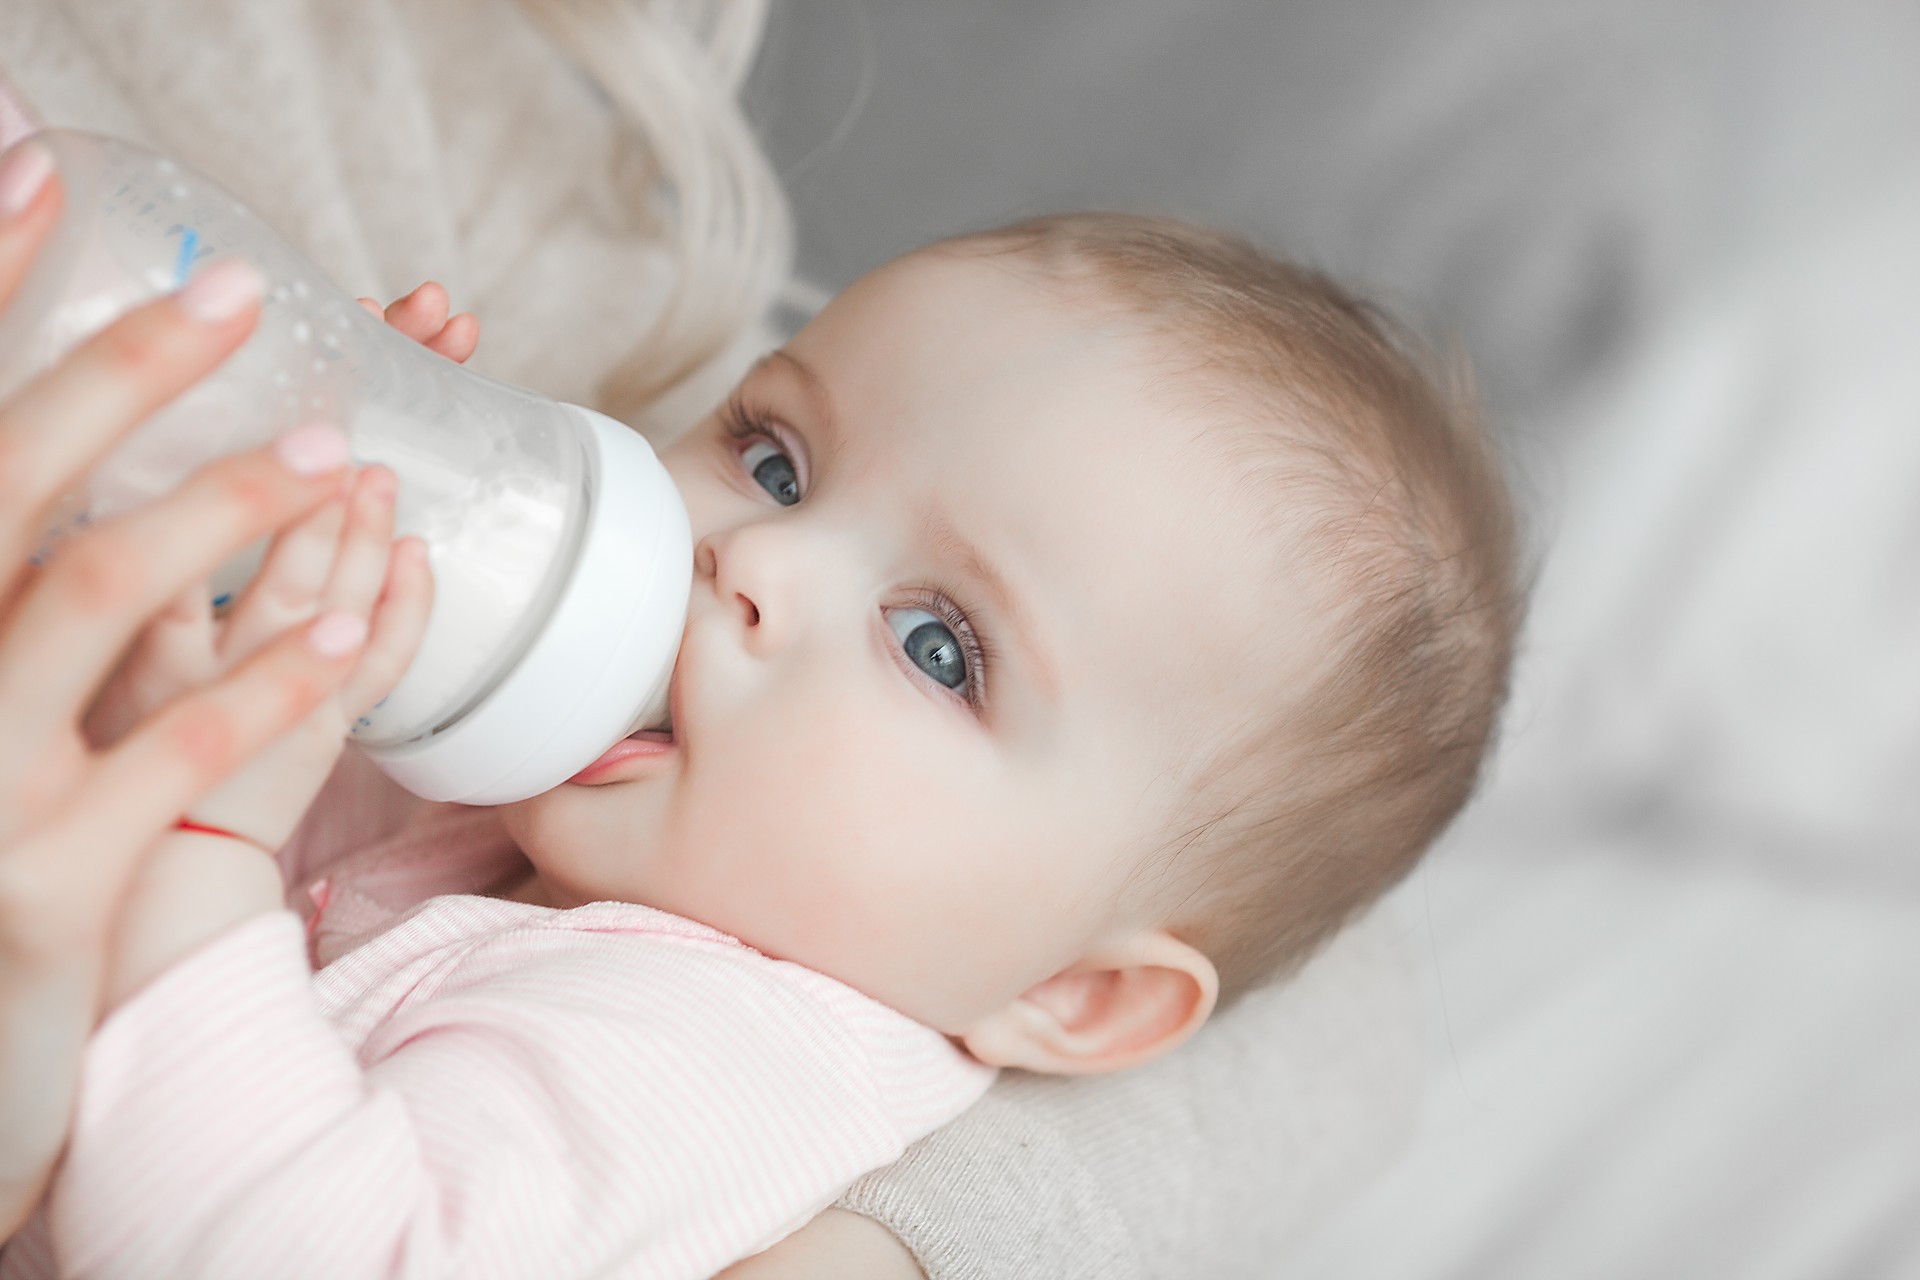 Les biberons en PP contamine le lait infantile avec des microplastiques lorsqu'ils sont chauffés. © olenachukhil, Adobe Stock